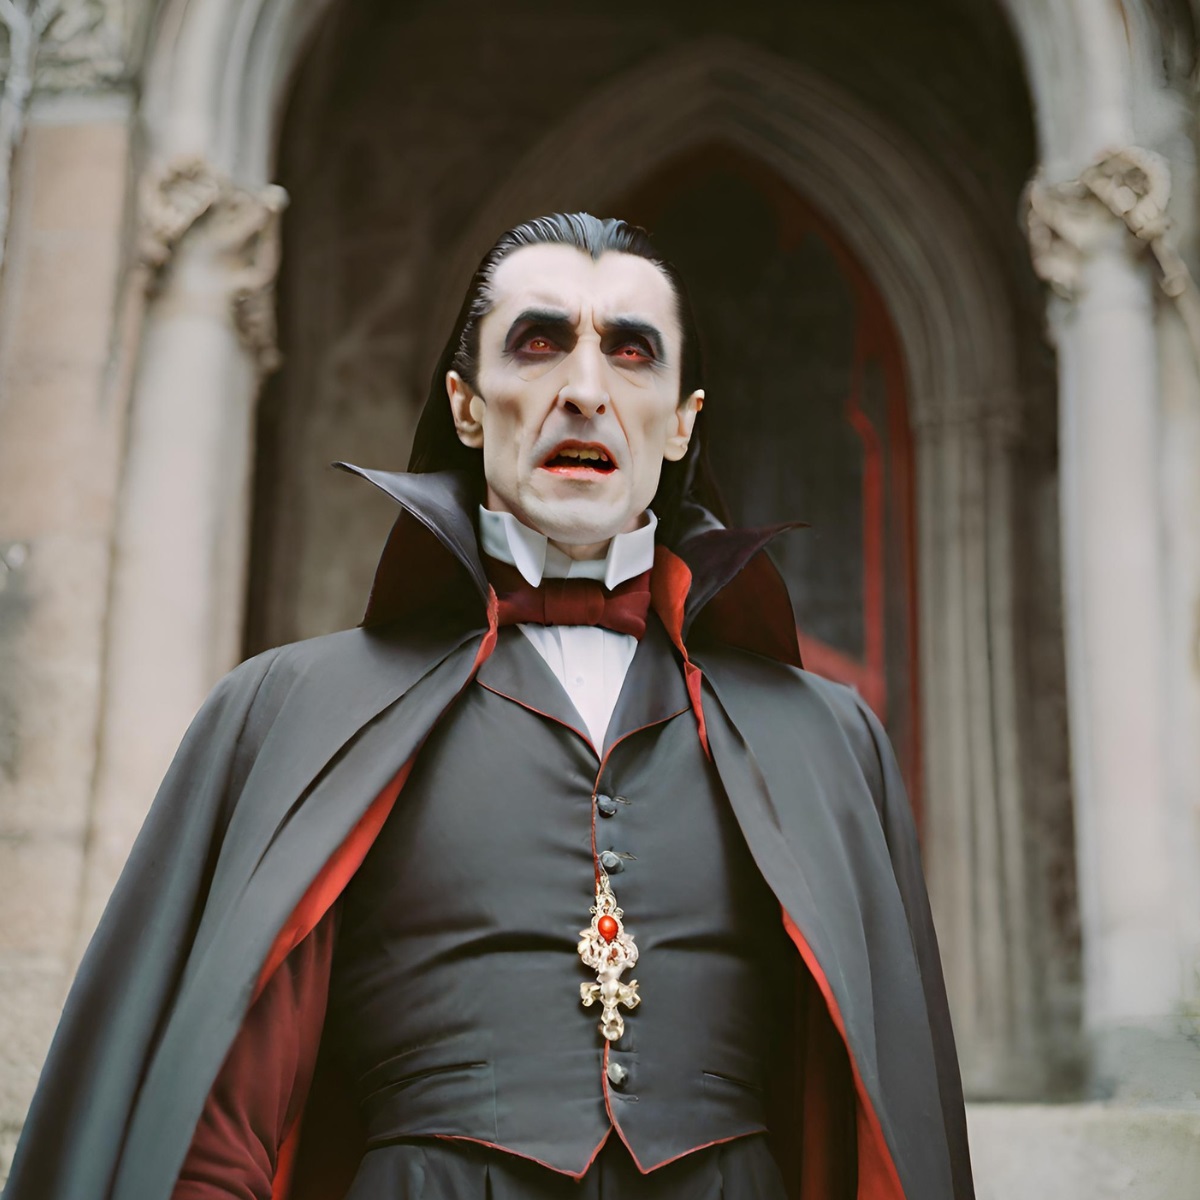 eksploitasi cerita tentang Vlad Drakula yang benar-benar ada